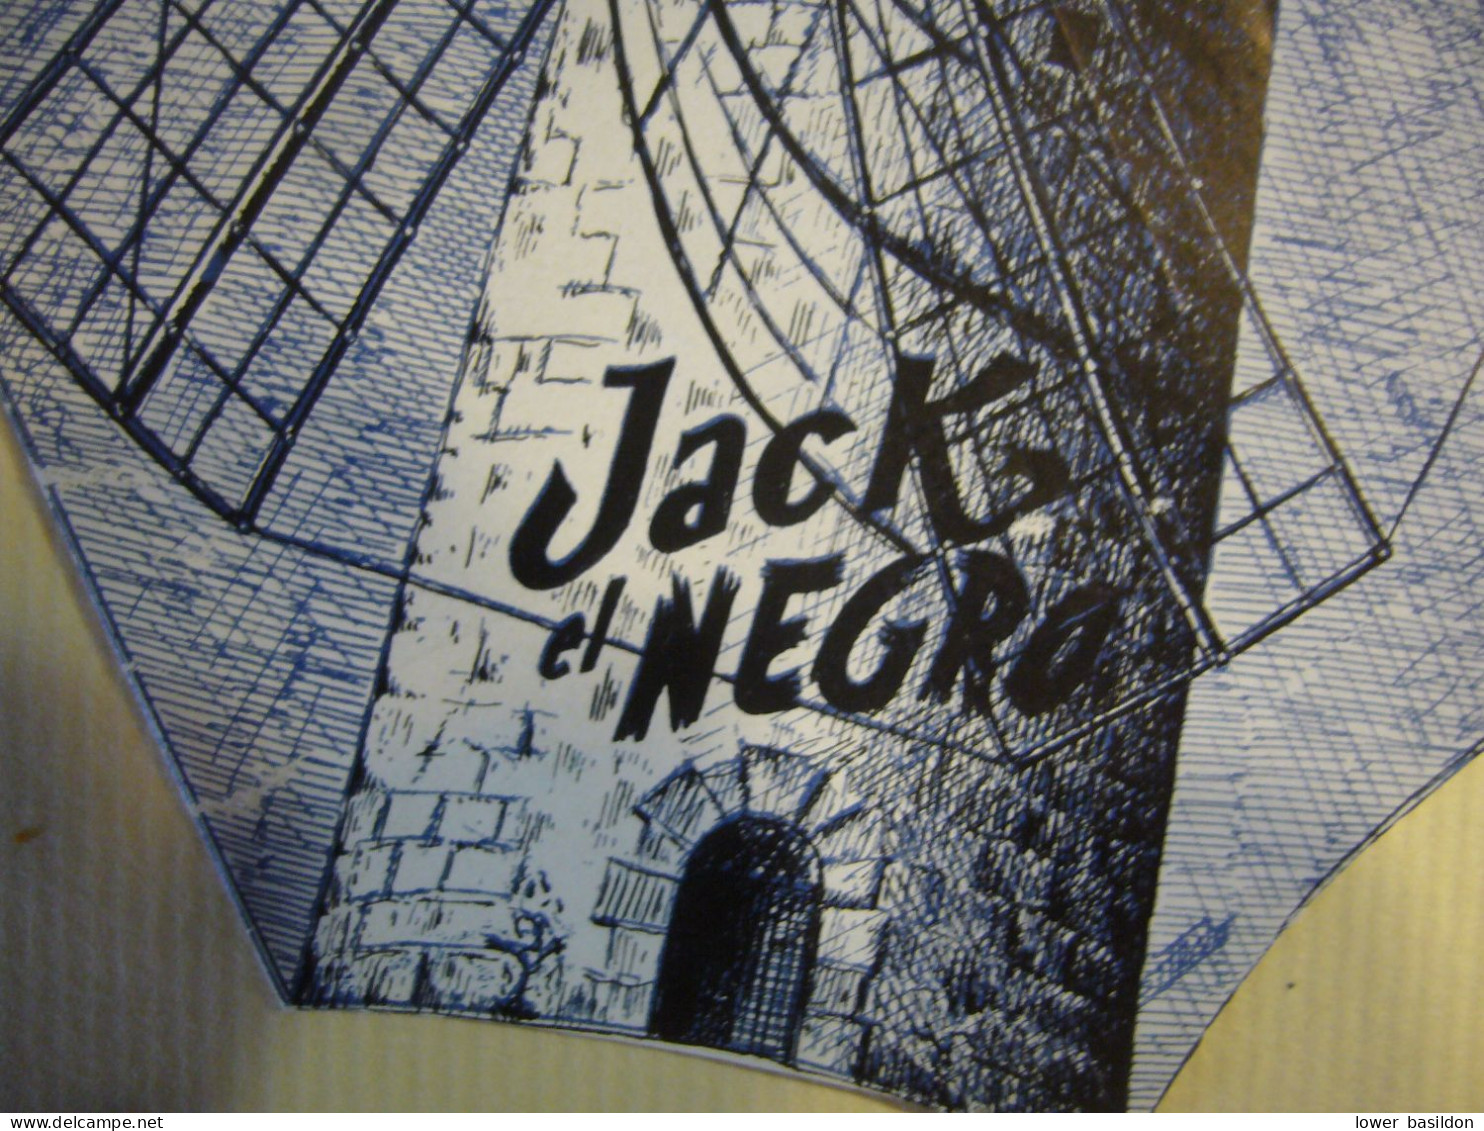 ESPAGNE     MAJORQUE    ' Jack El Negro " - Programma's